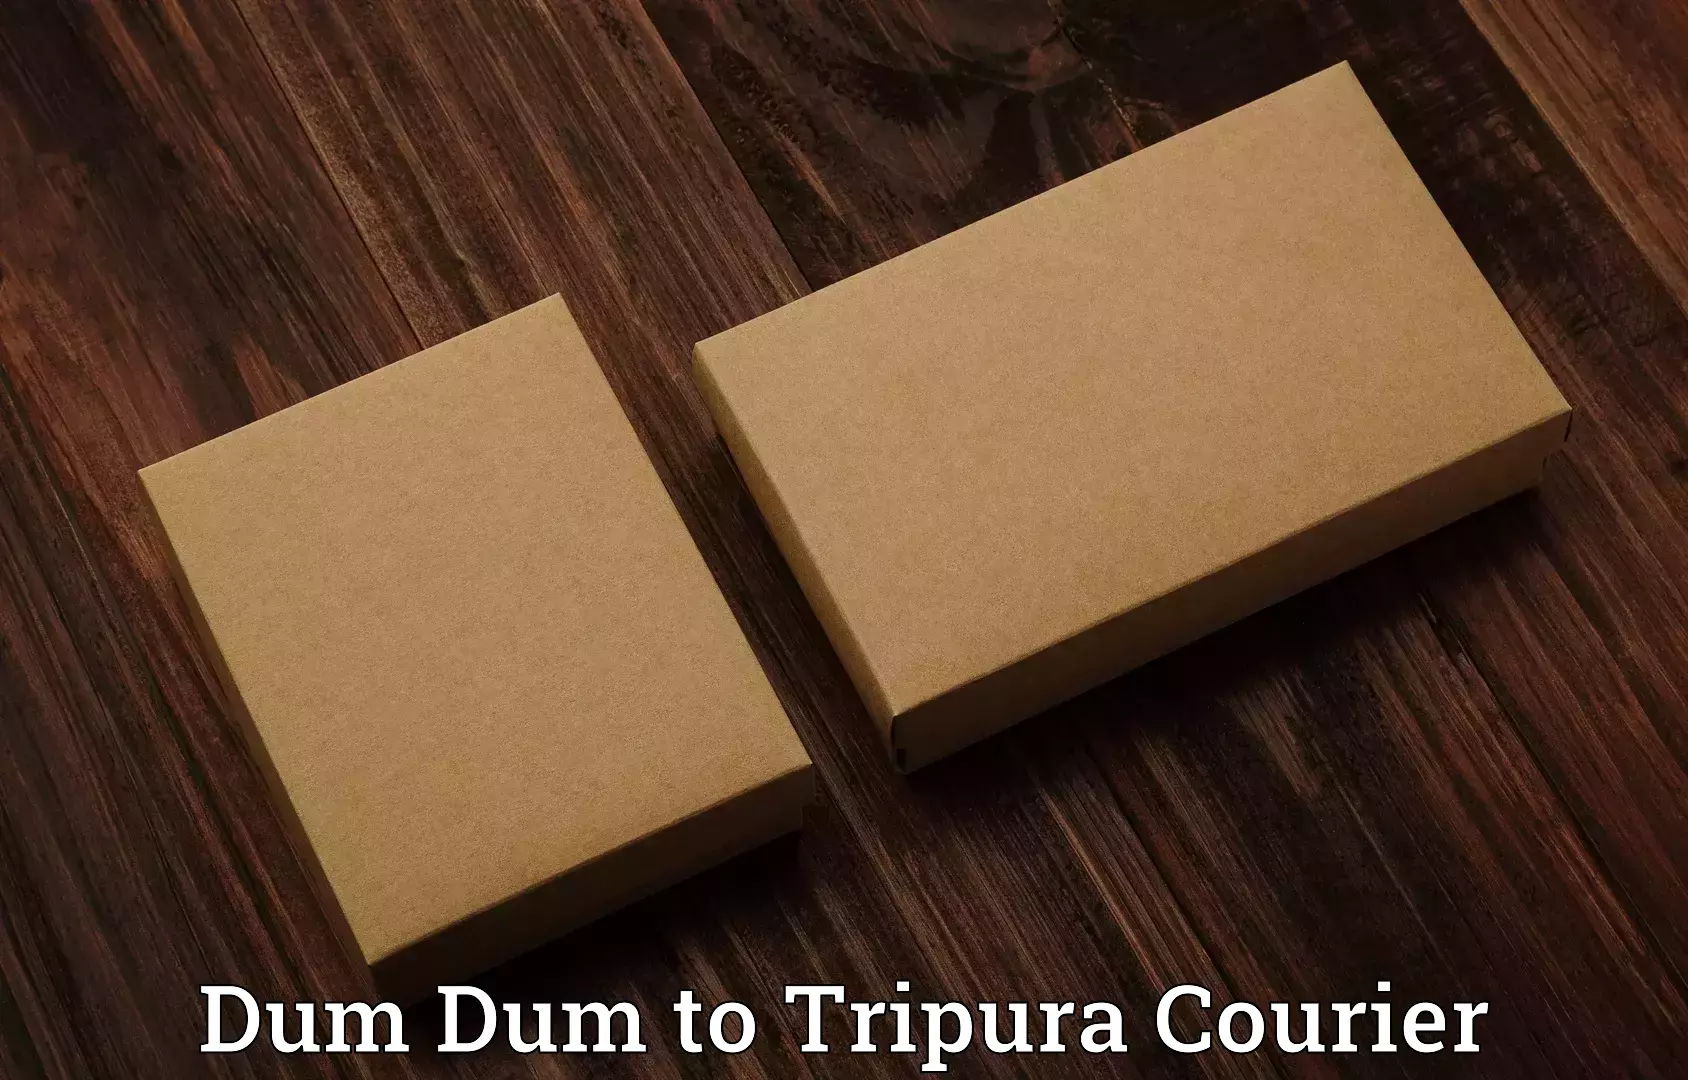 Luggage transport service Dum Dum to Tripura